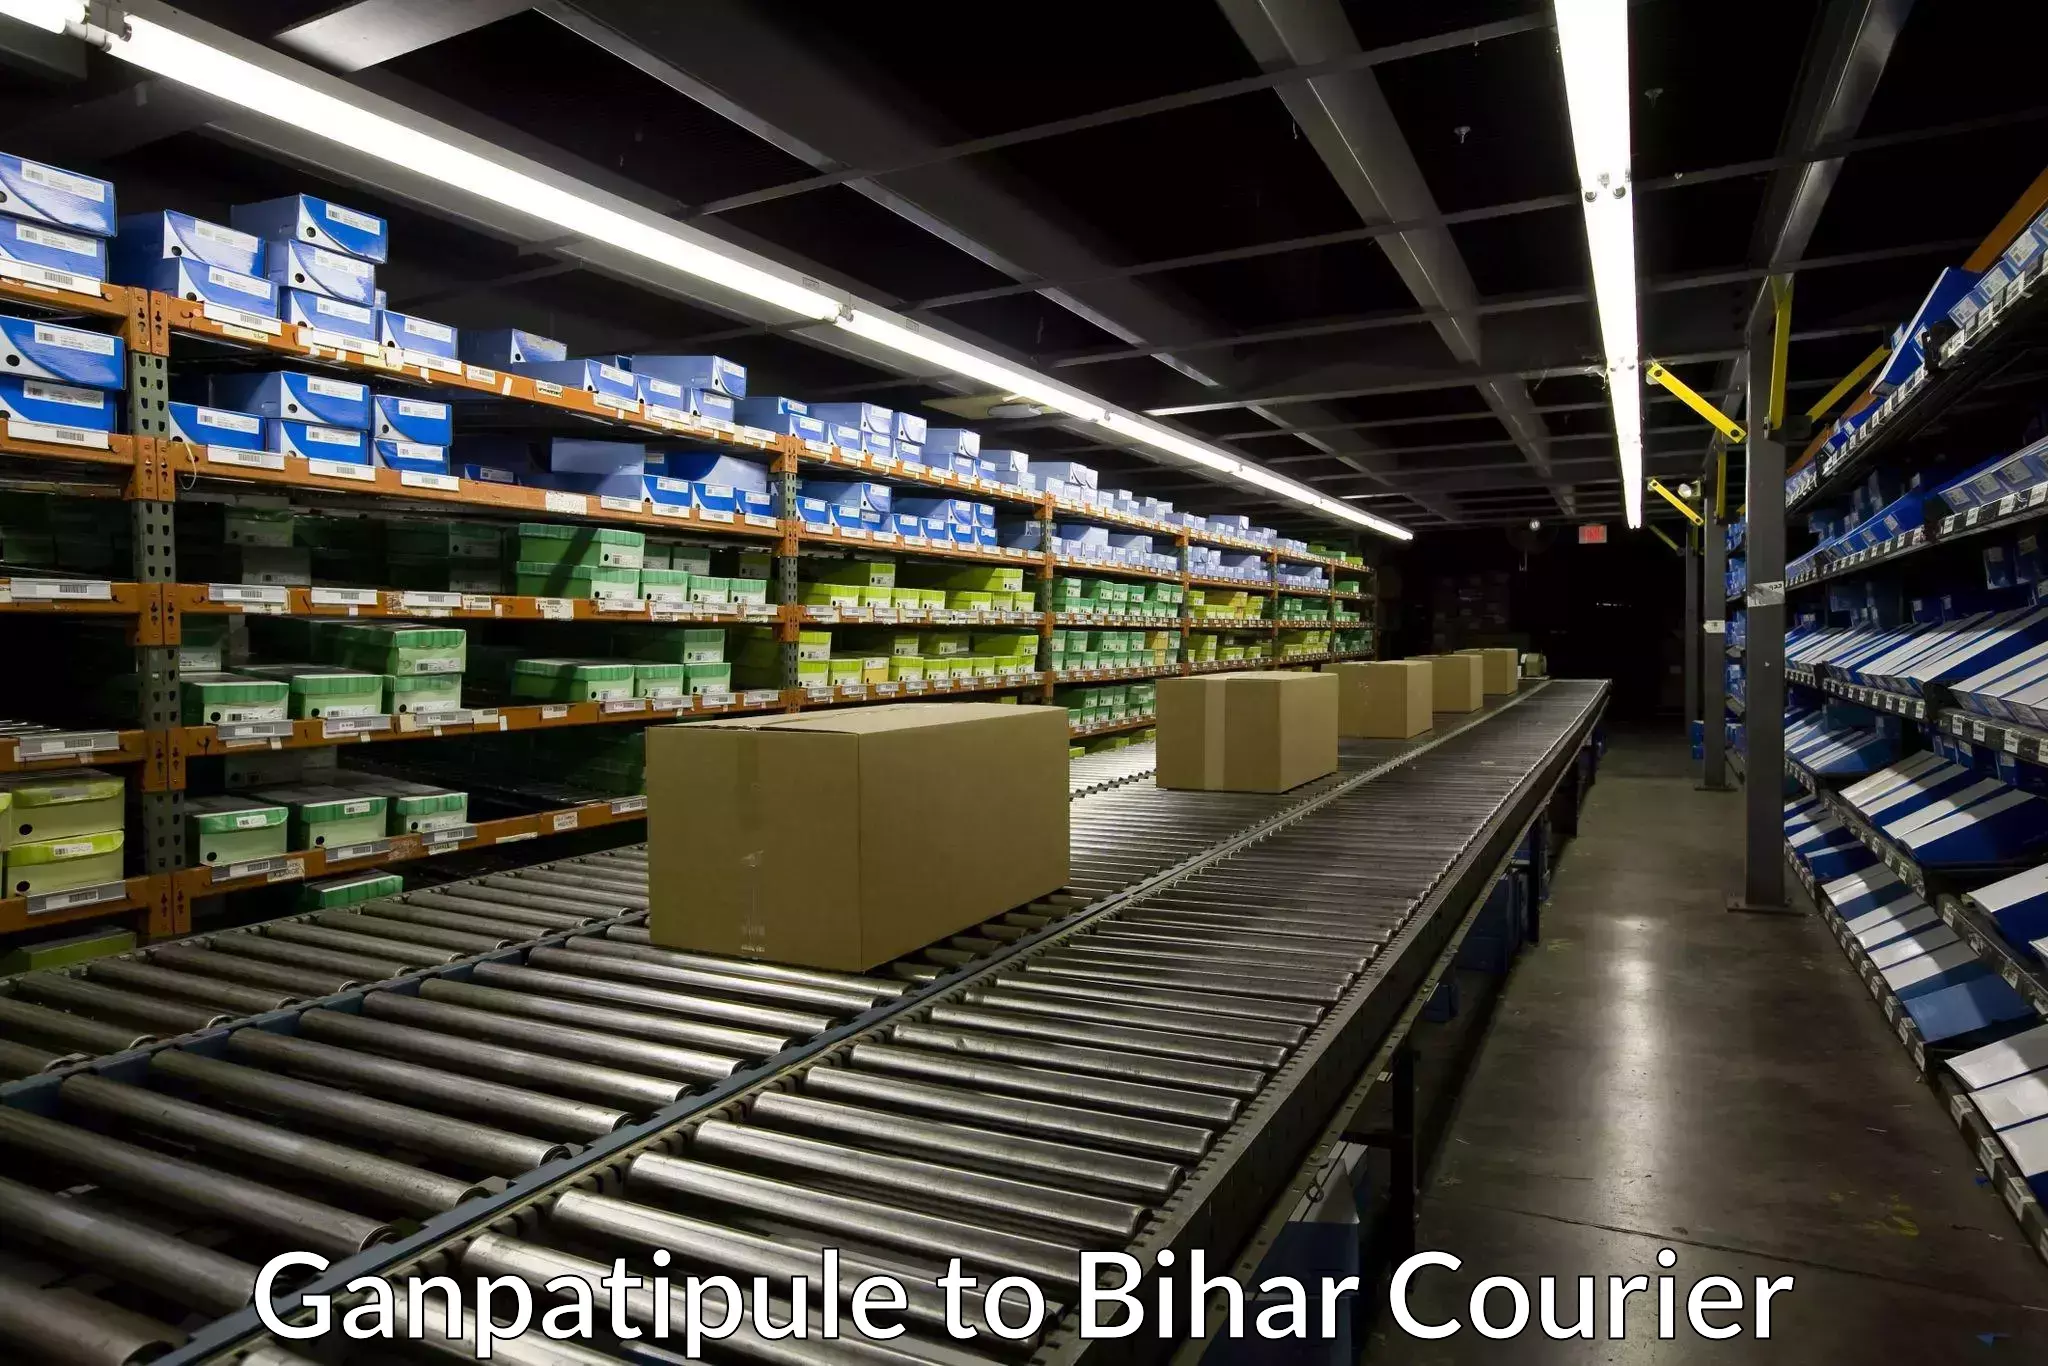 Premium courier solutions Ganpatipule to Bihar